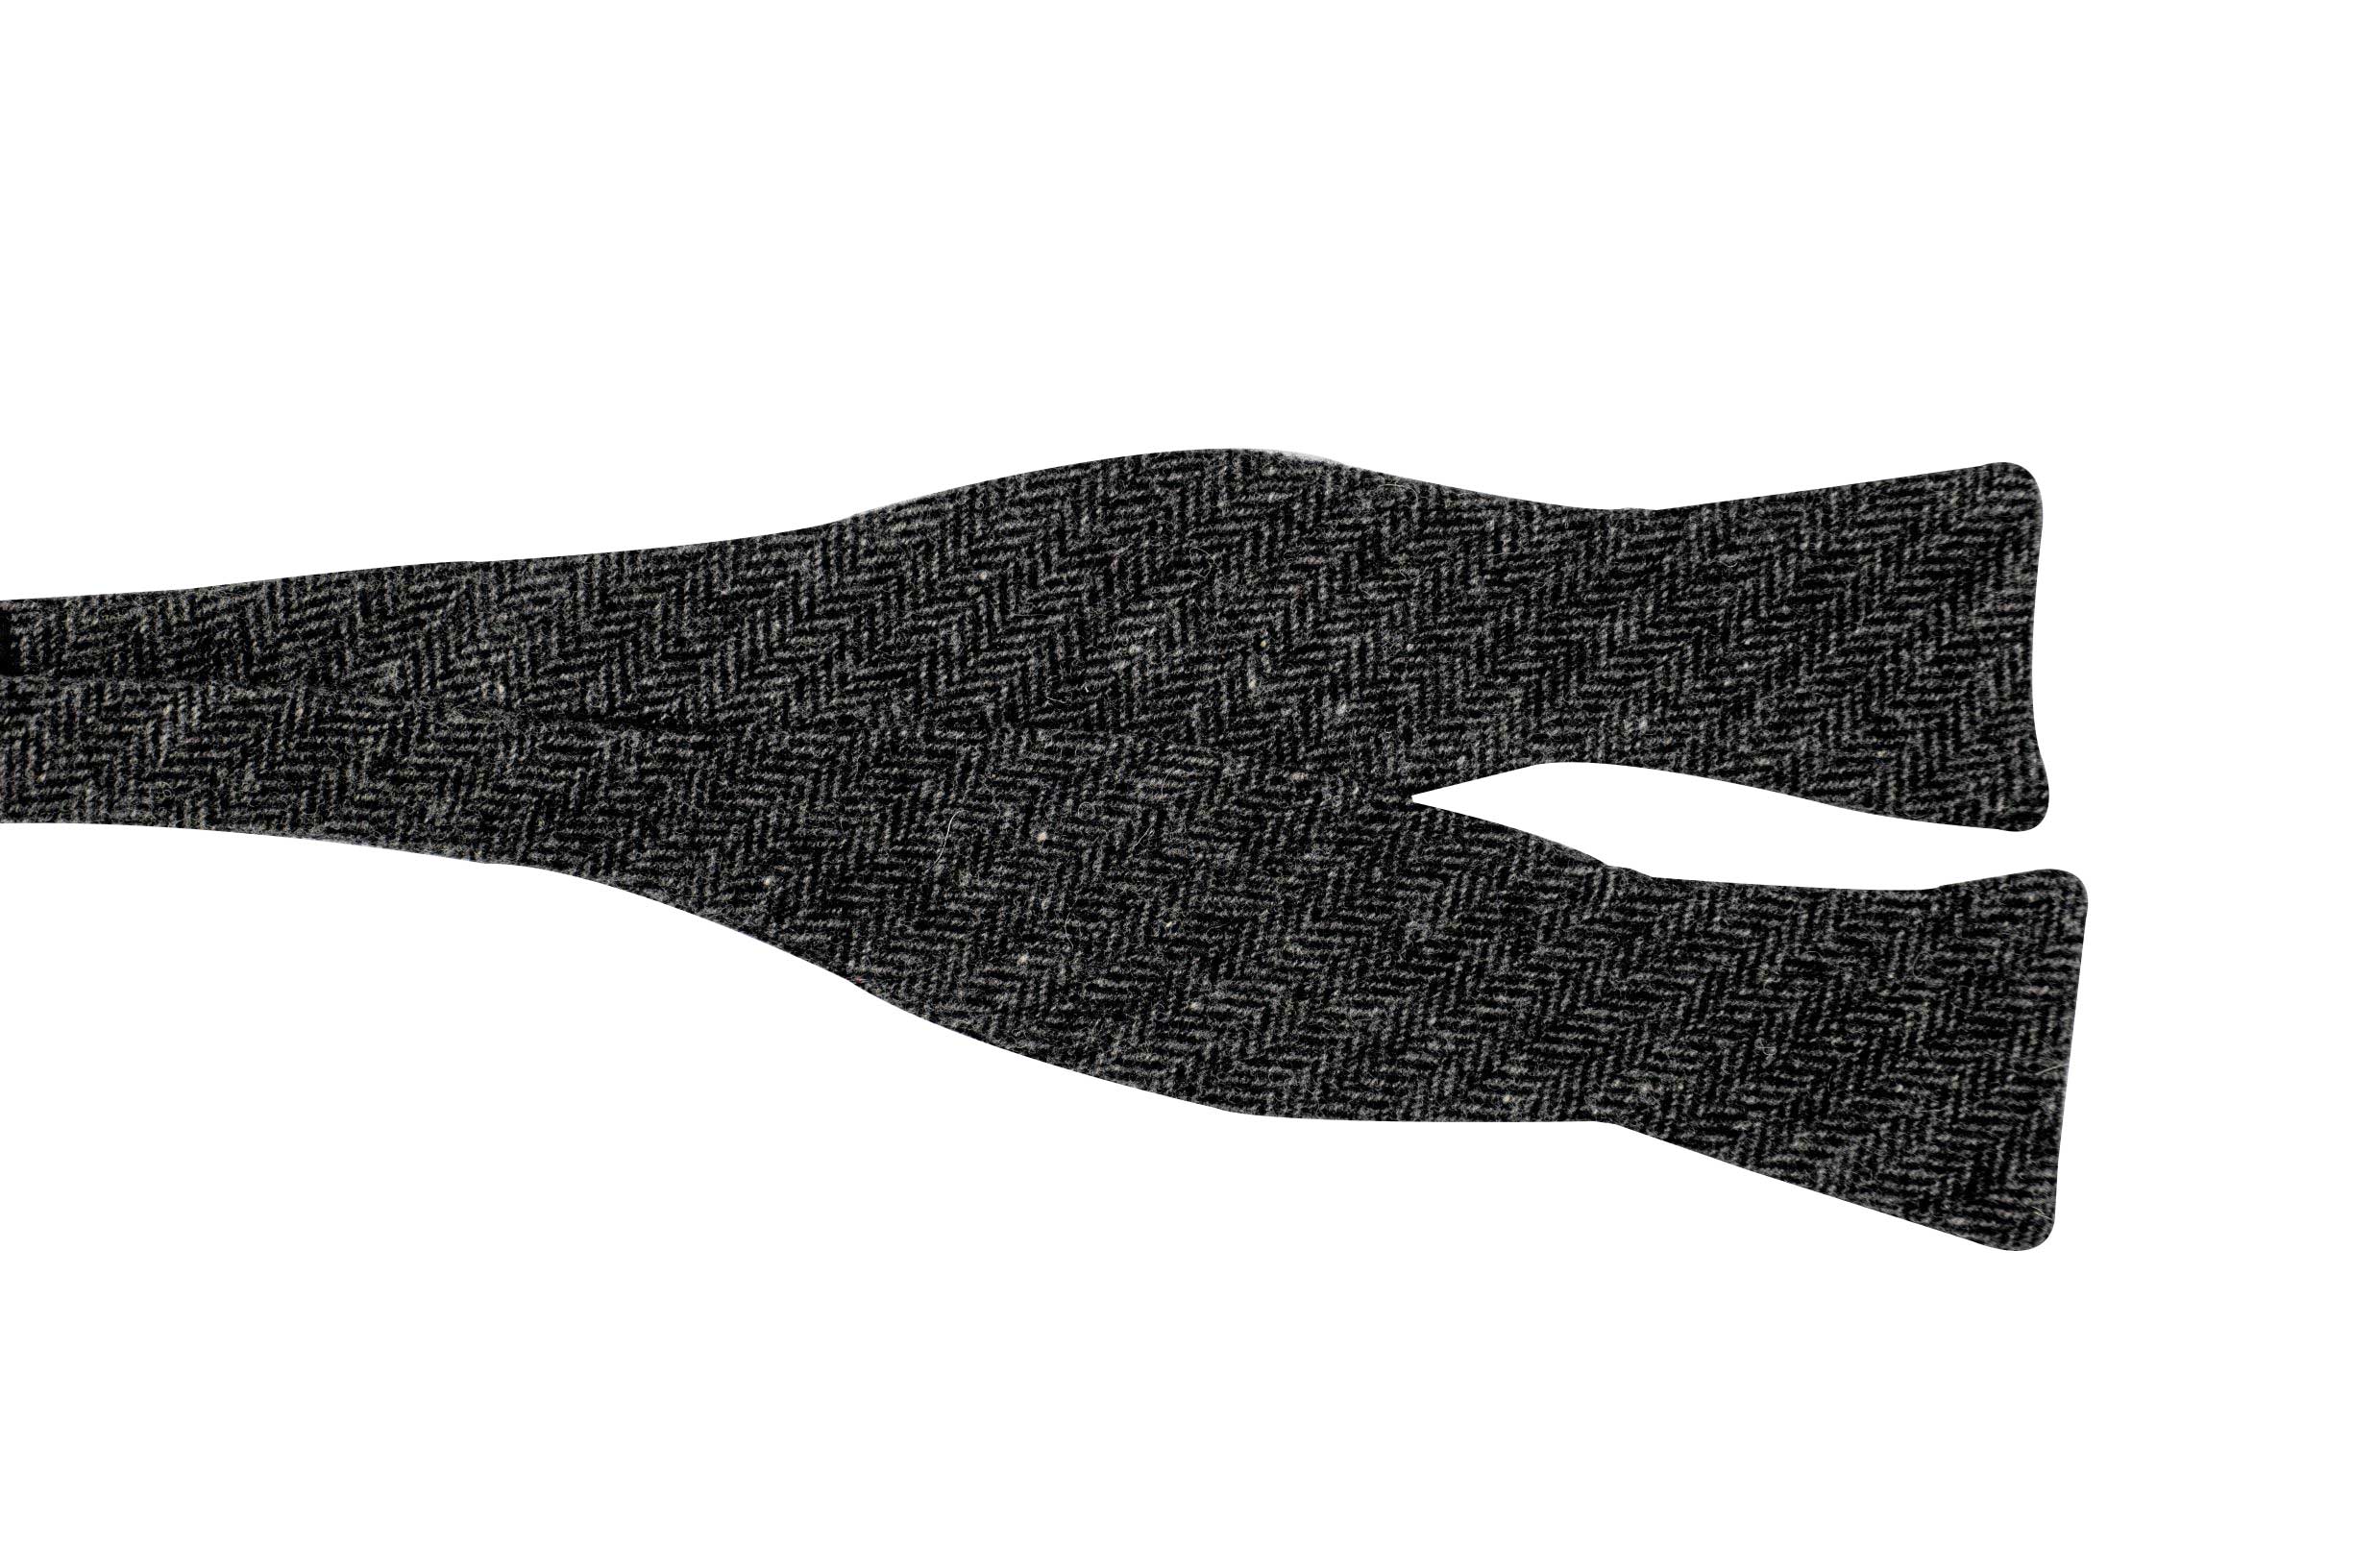 The Douglas Wool Herringbone Bow Tie